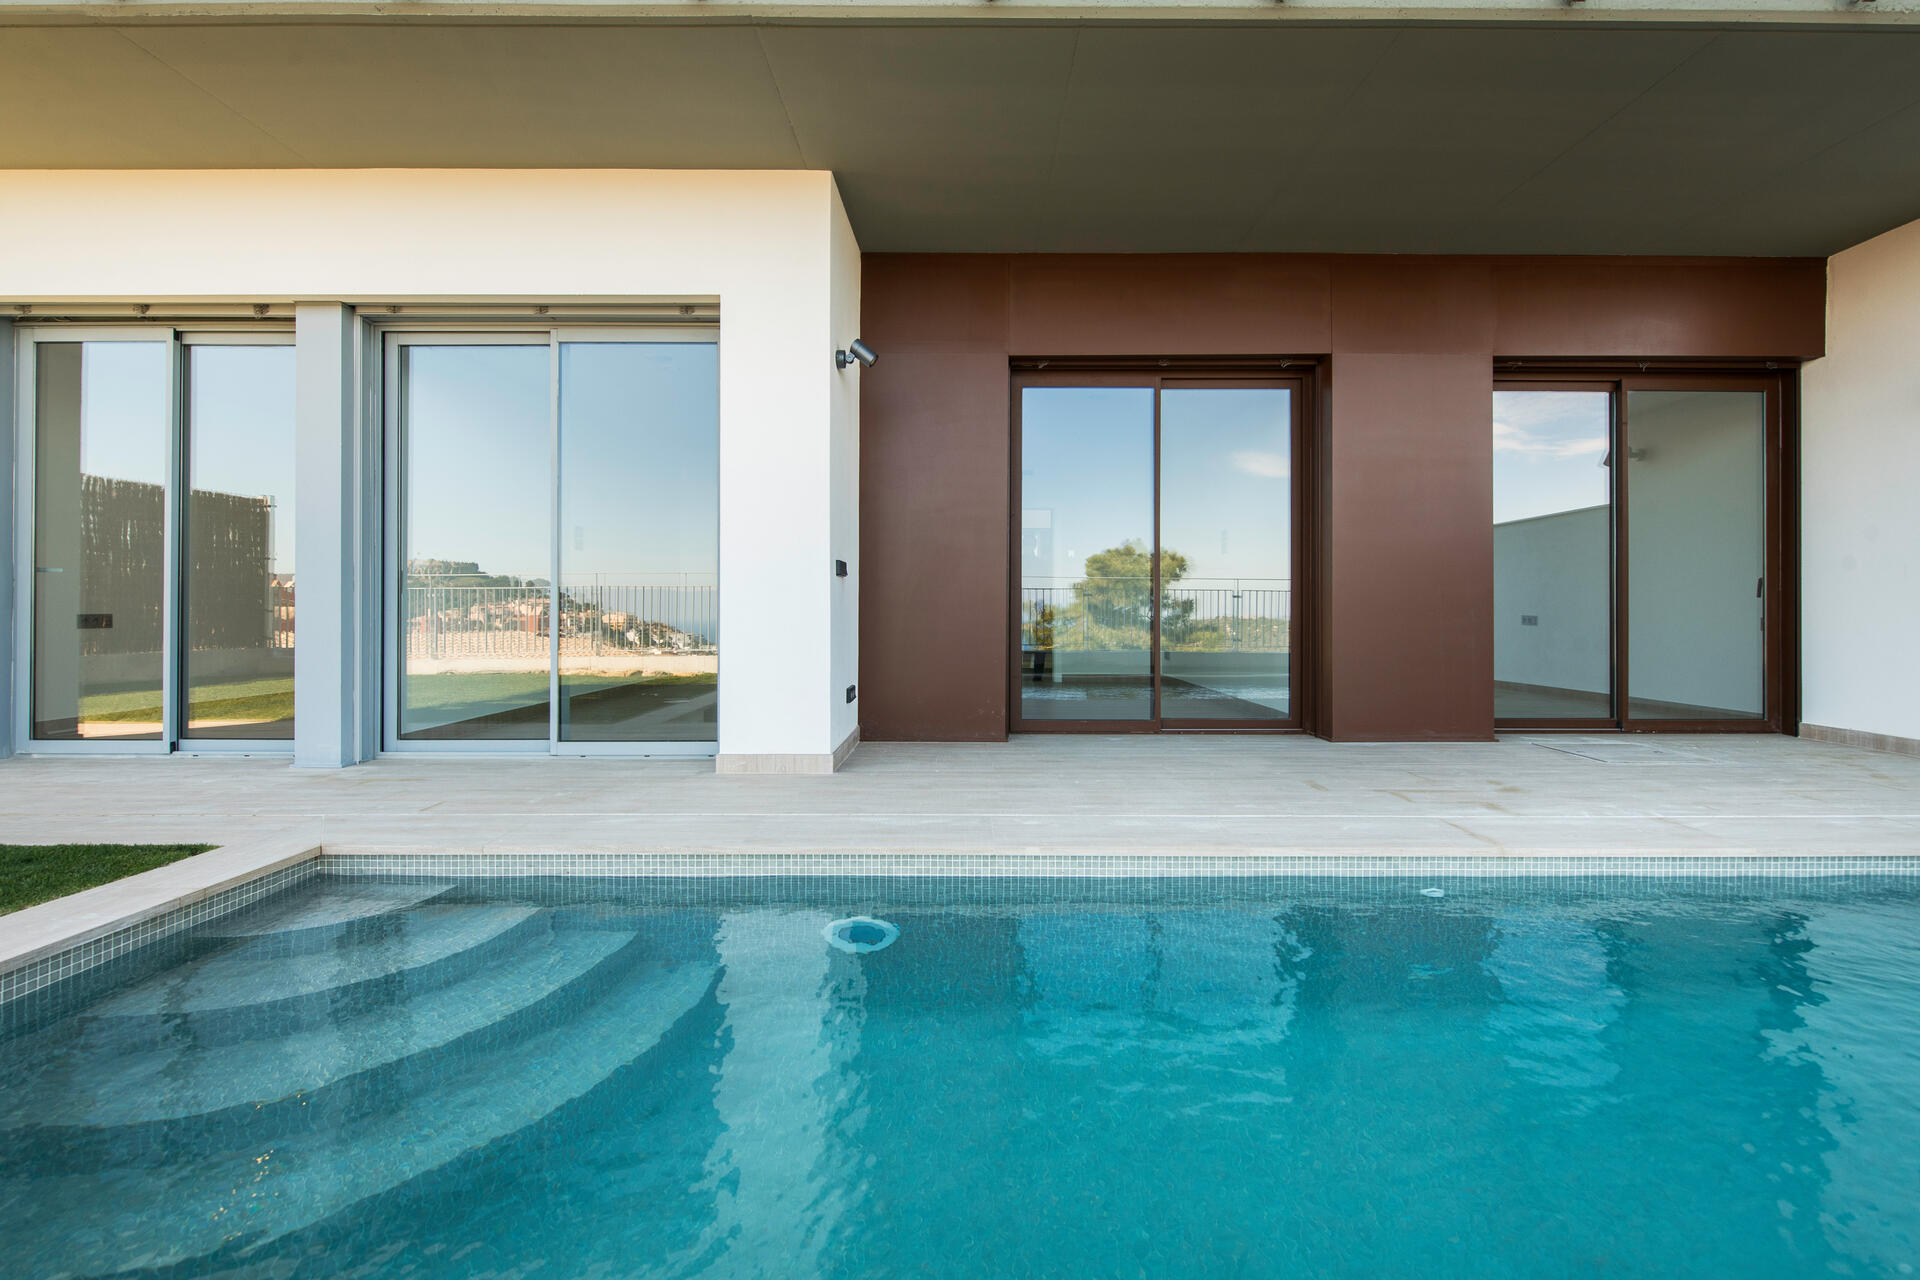 Villas del Sol Costa Brava Aussicht Panorama view Pool CG Immobilien - Ihr Traumhaus an der Costa Brava in Spanien nähe Barcelona